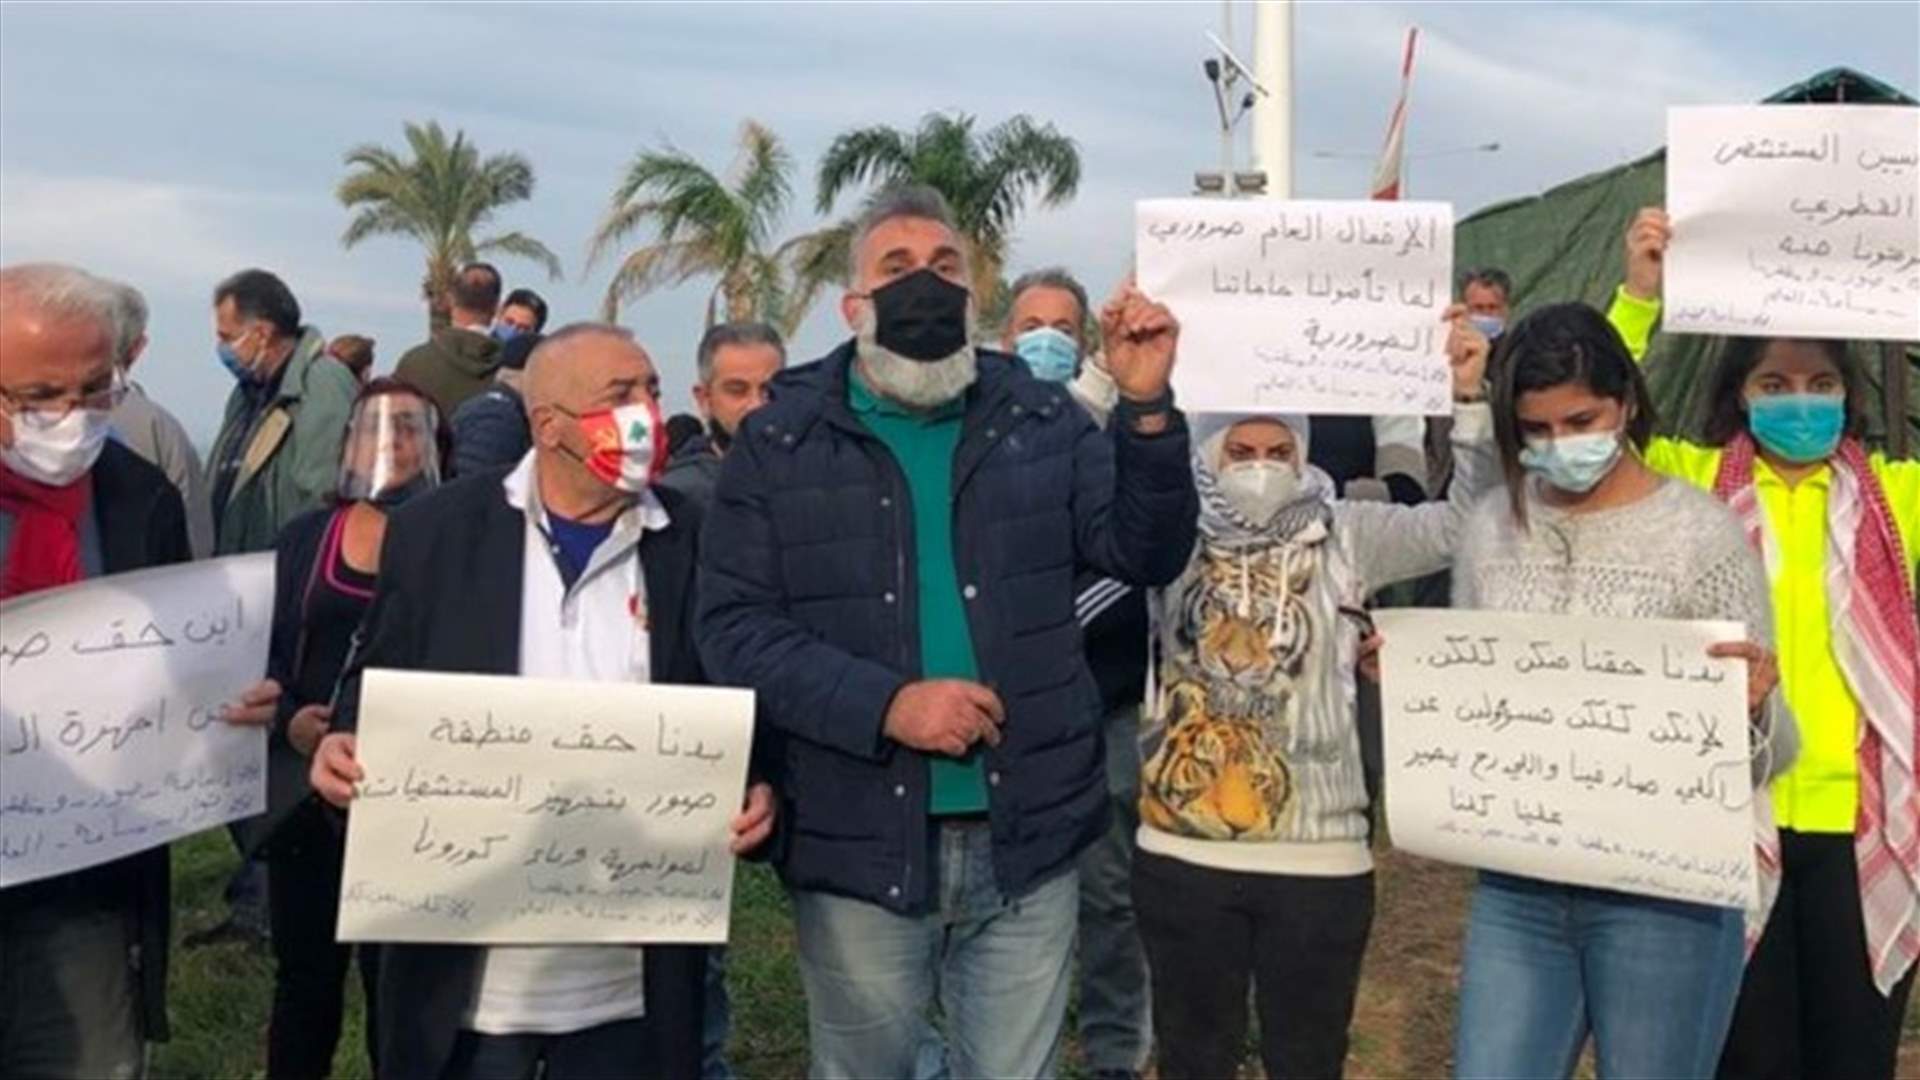 وقفة احتجاجية في صور تضامنا مع الحراك في طرابلس وسائر المناطق